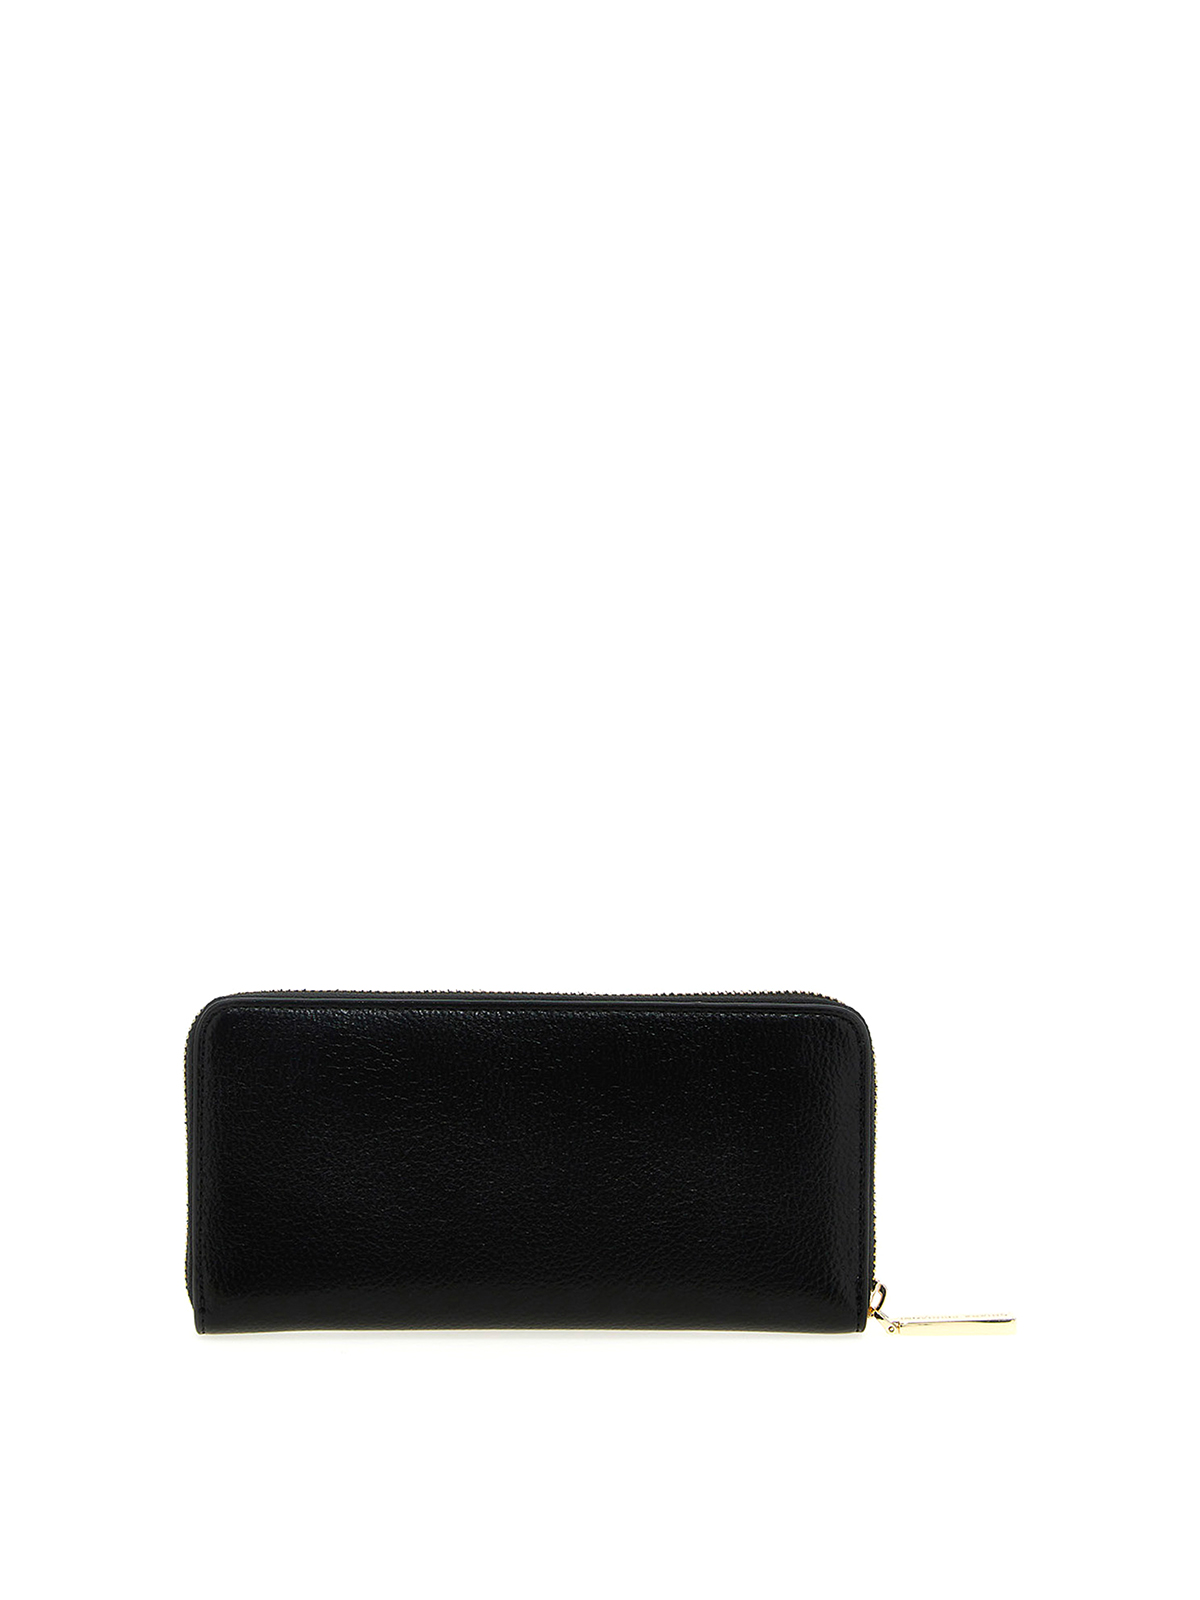 Chiara Ferragni Wallet in Black